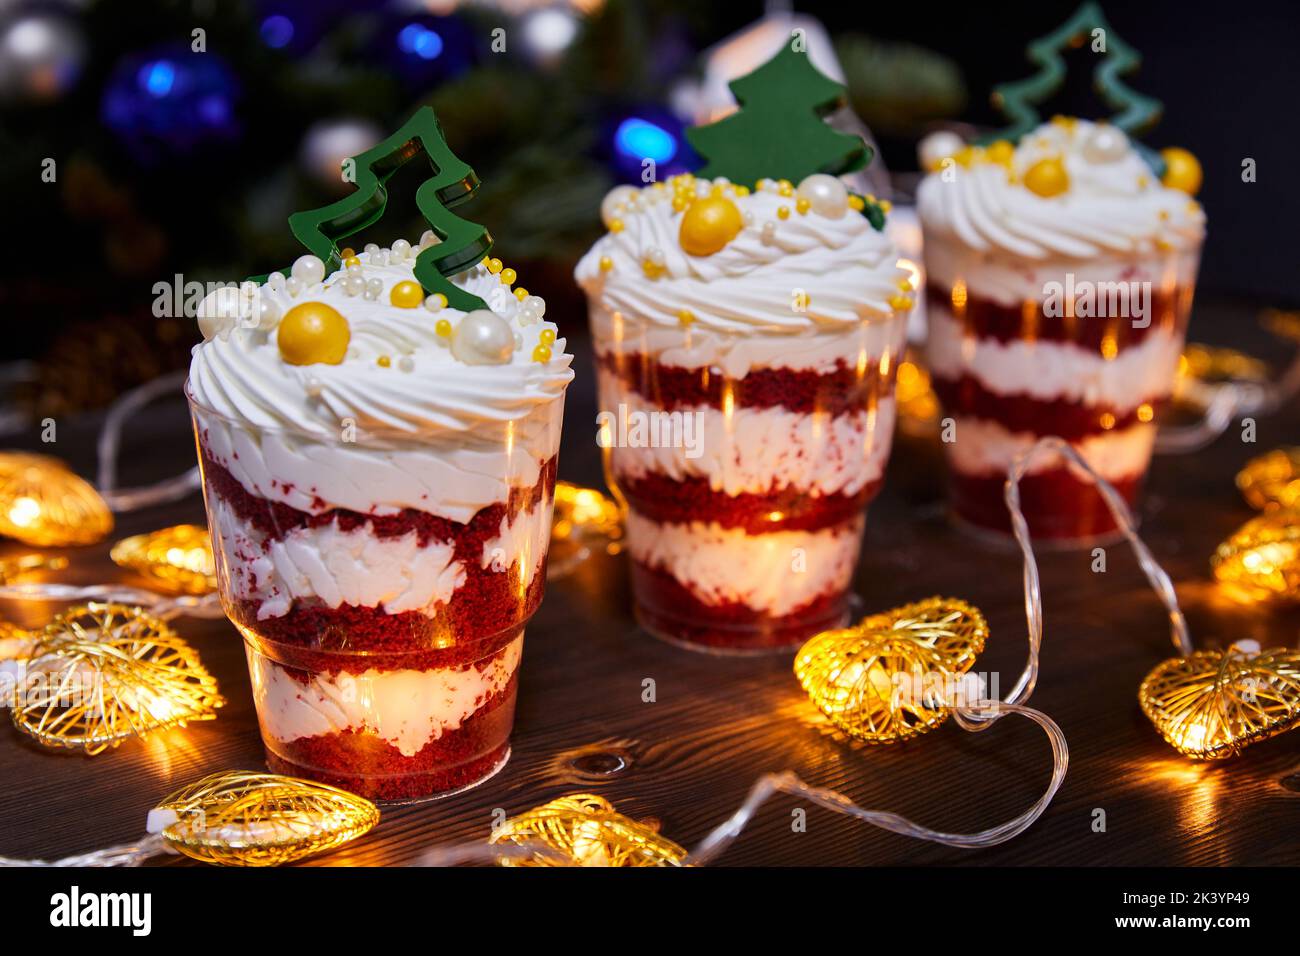 Weihnachts-Kleinigkeiten in Tassen als Dessert, verziert mit Schokoladen-Neujahr-Bäumen, für einen festlichen Tisch auf dem Hintergrund glühender Girlanden Stockfoto